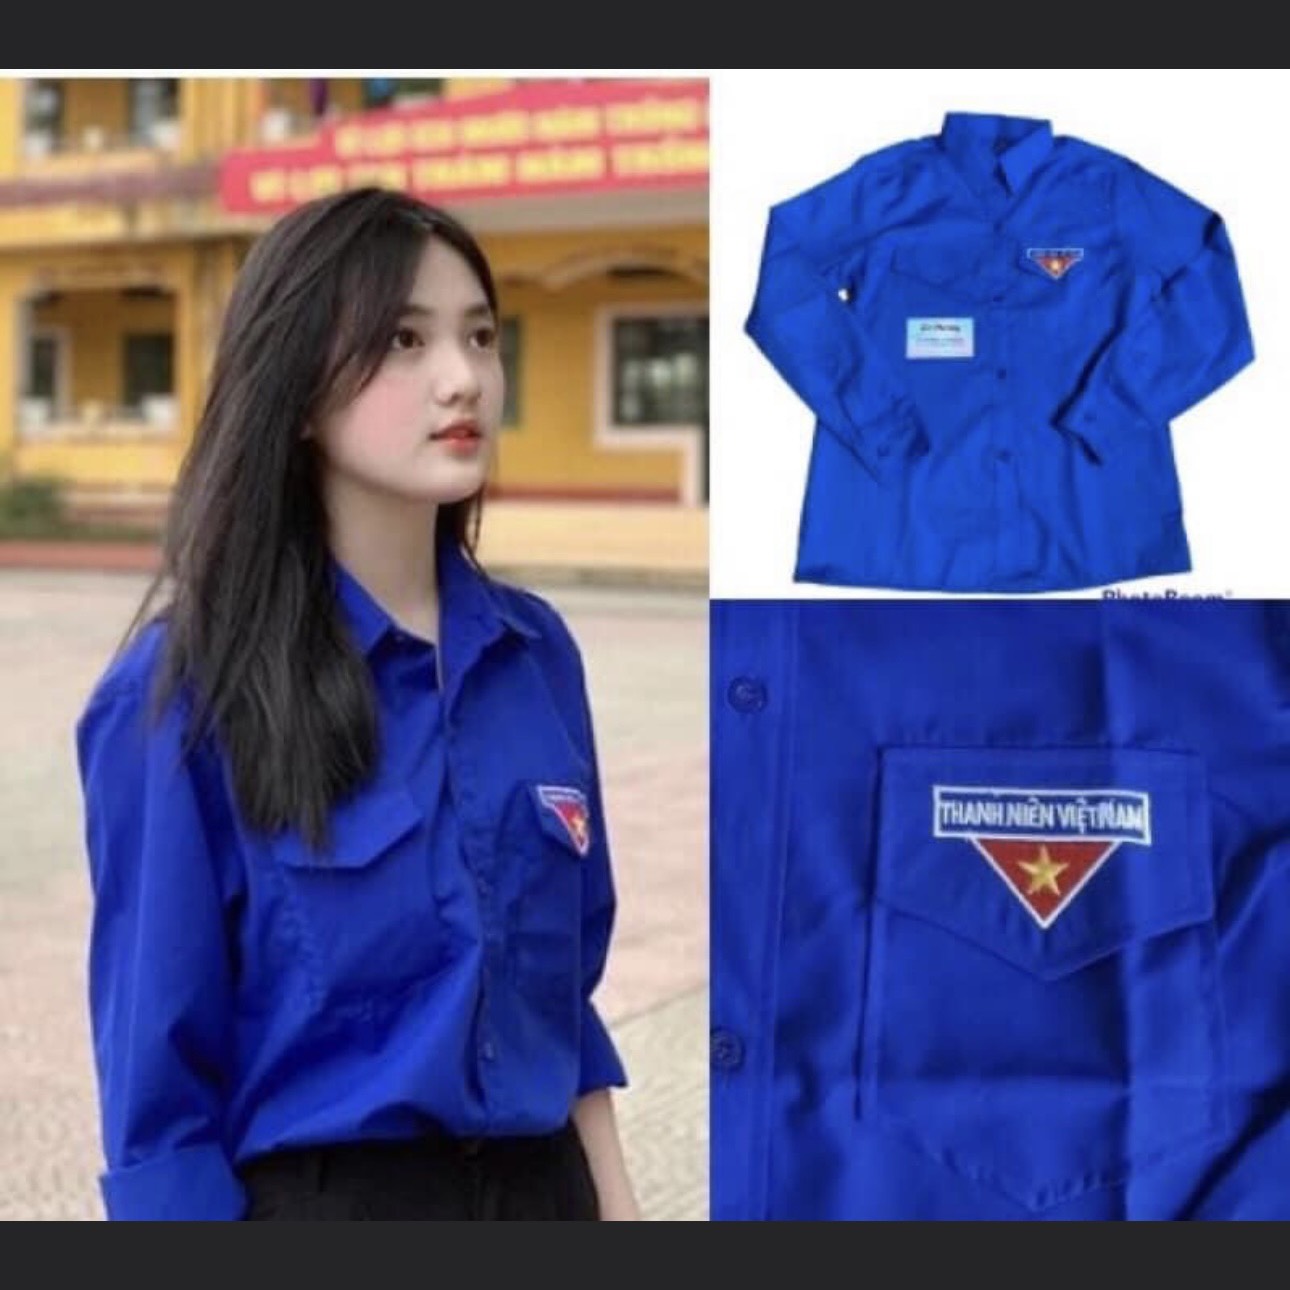 Cửa hàng bán áo đoàn thanh niên giá rẻ tại TPHCM quận Bình Tân - Đồng Phục  Bảo An